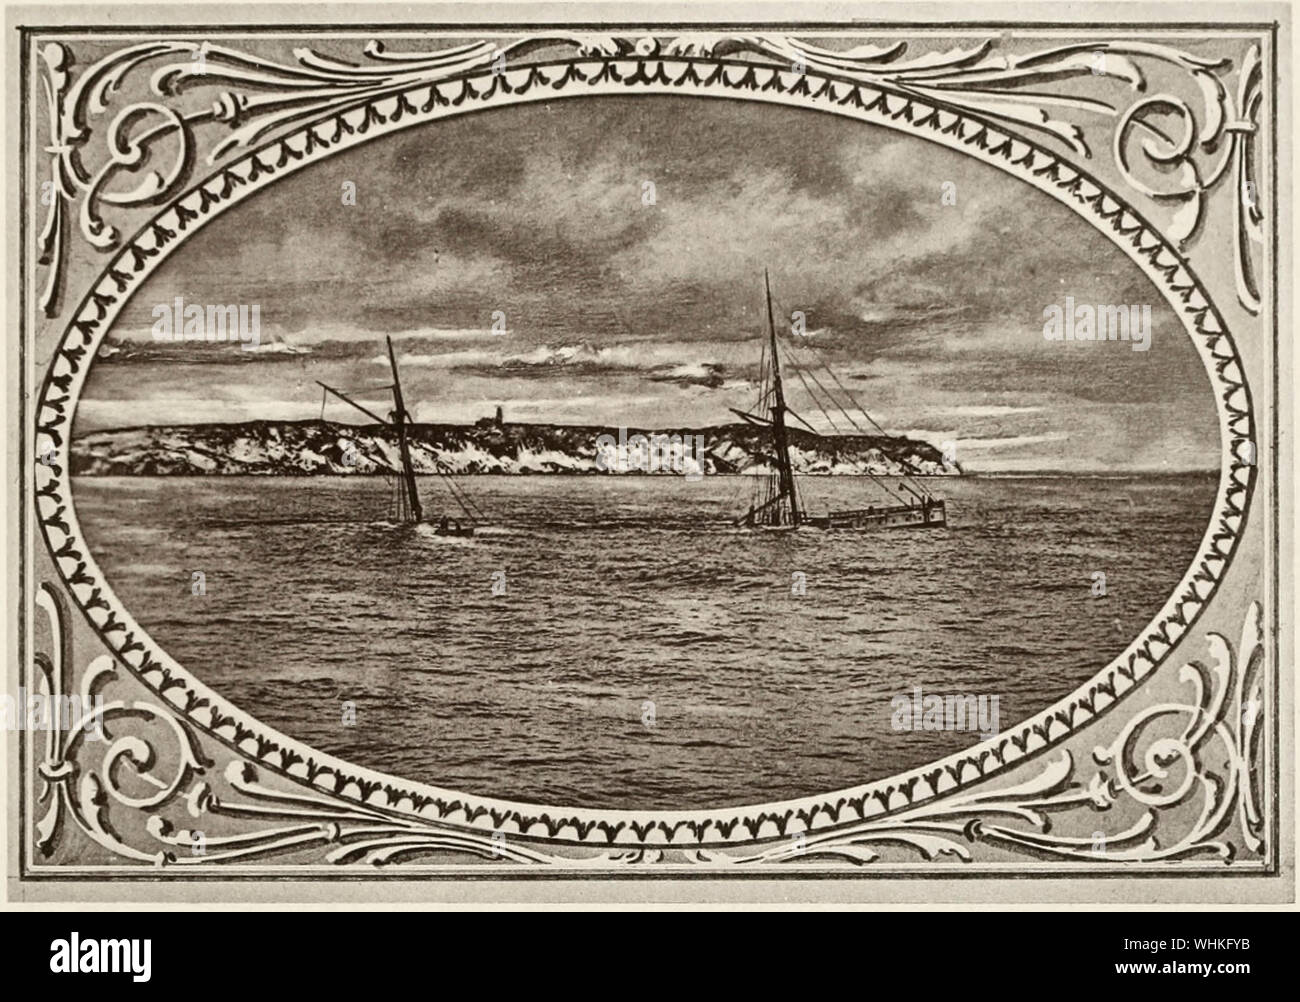 Die Stadt Columbus nach dem Wrack. Die passagierdampfer City of Columbus strandete auf des Teufels Brücke von der Gay Head Aquinnah Klippen, Massachusetts, in den frühen Morgenstunden des 18. Januar, 1884. Stockfoto